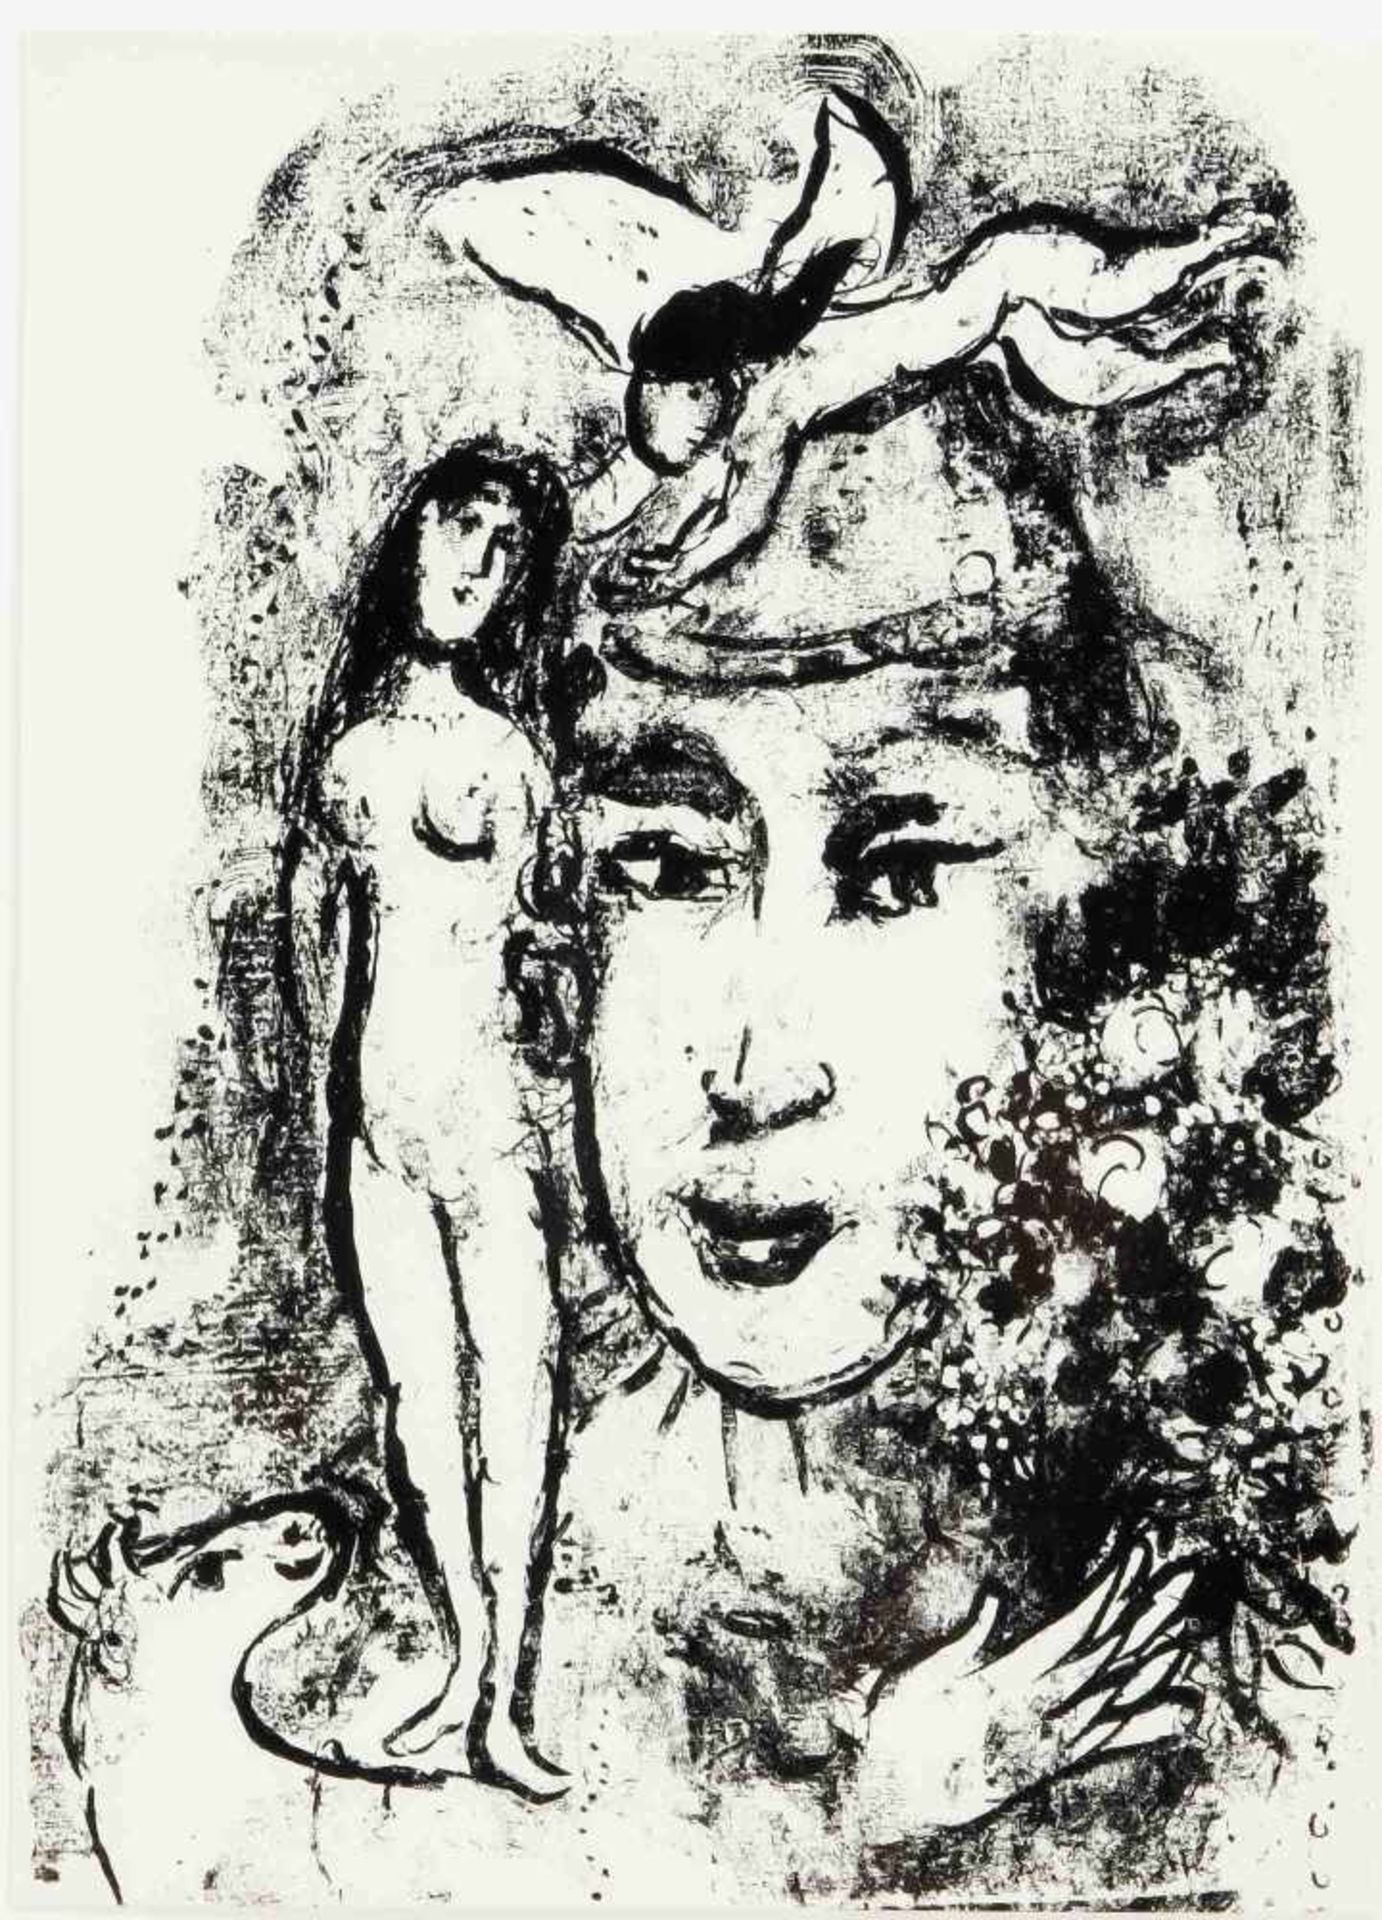 Marc Chagall (1887-1985), Der weiße Clown, Lithographie in Schwarz, 1964, Motivmaße: 37,5x 27 cm.